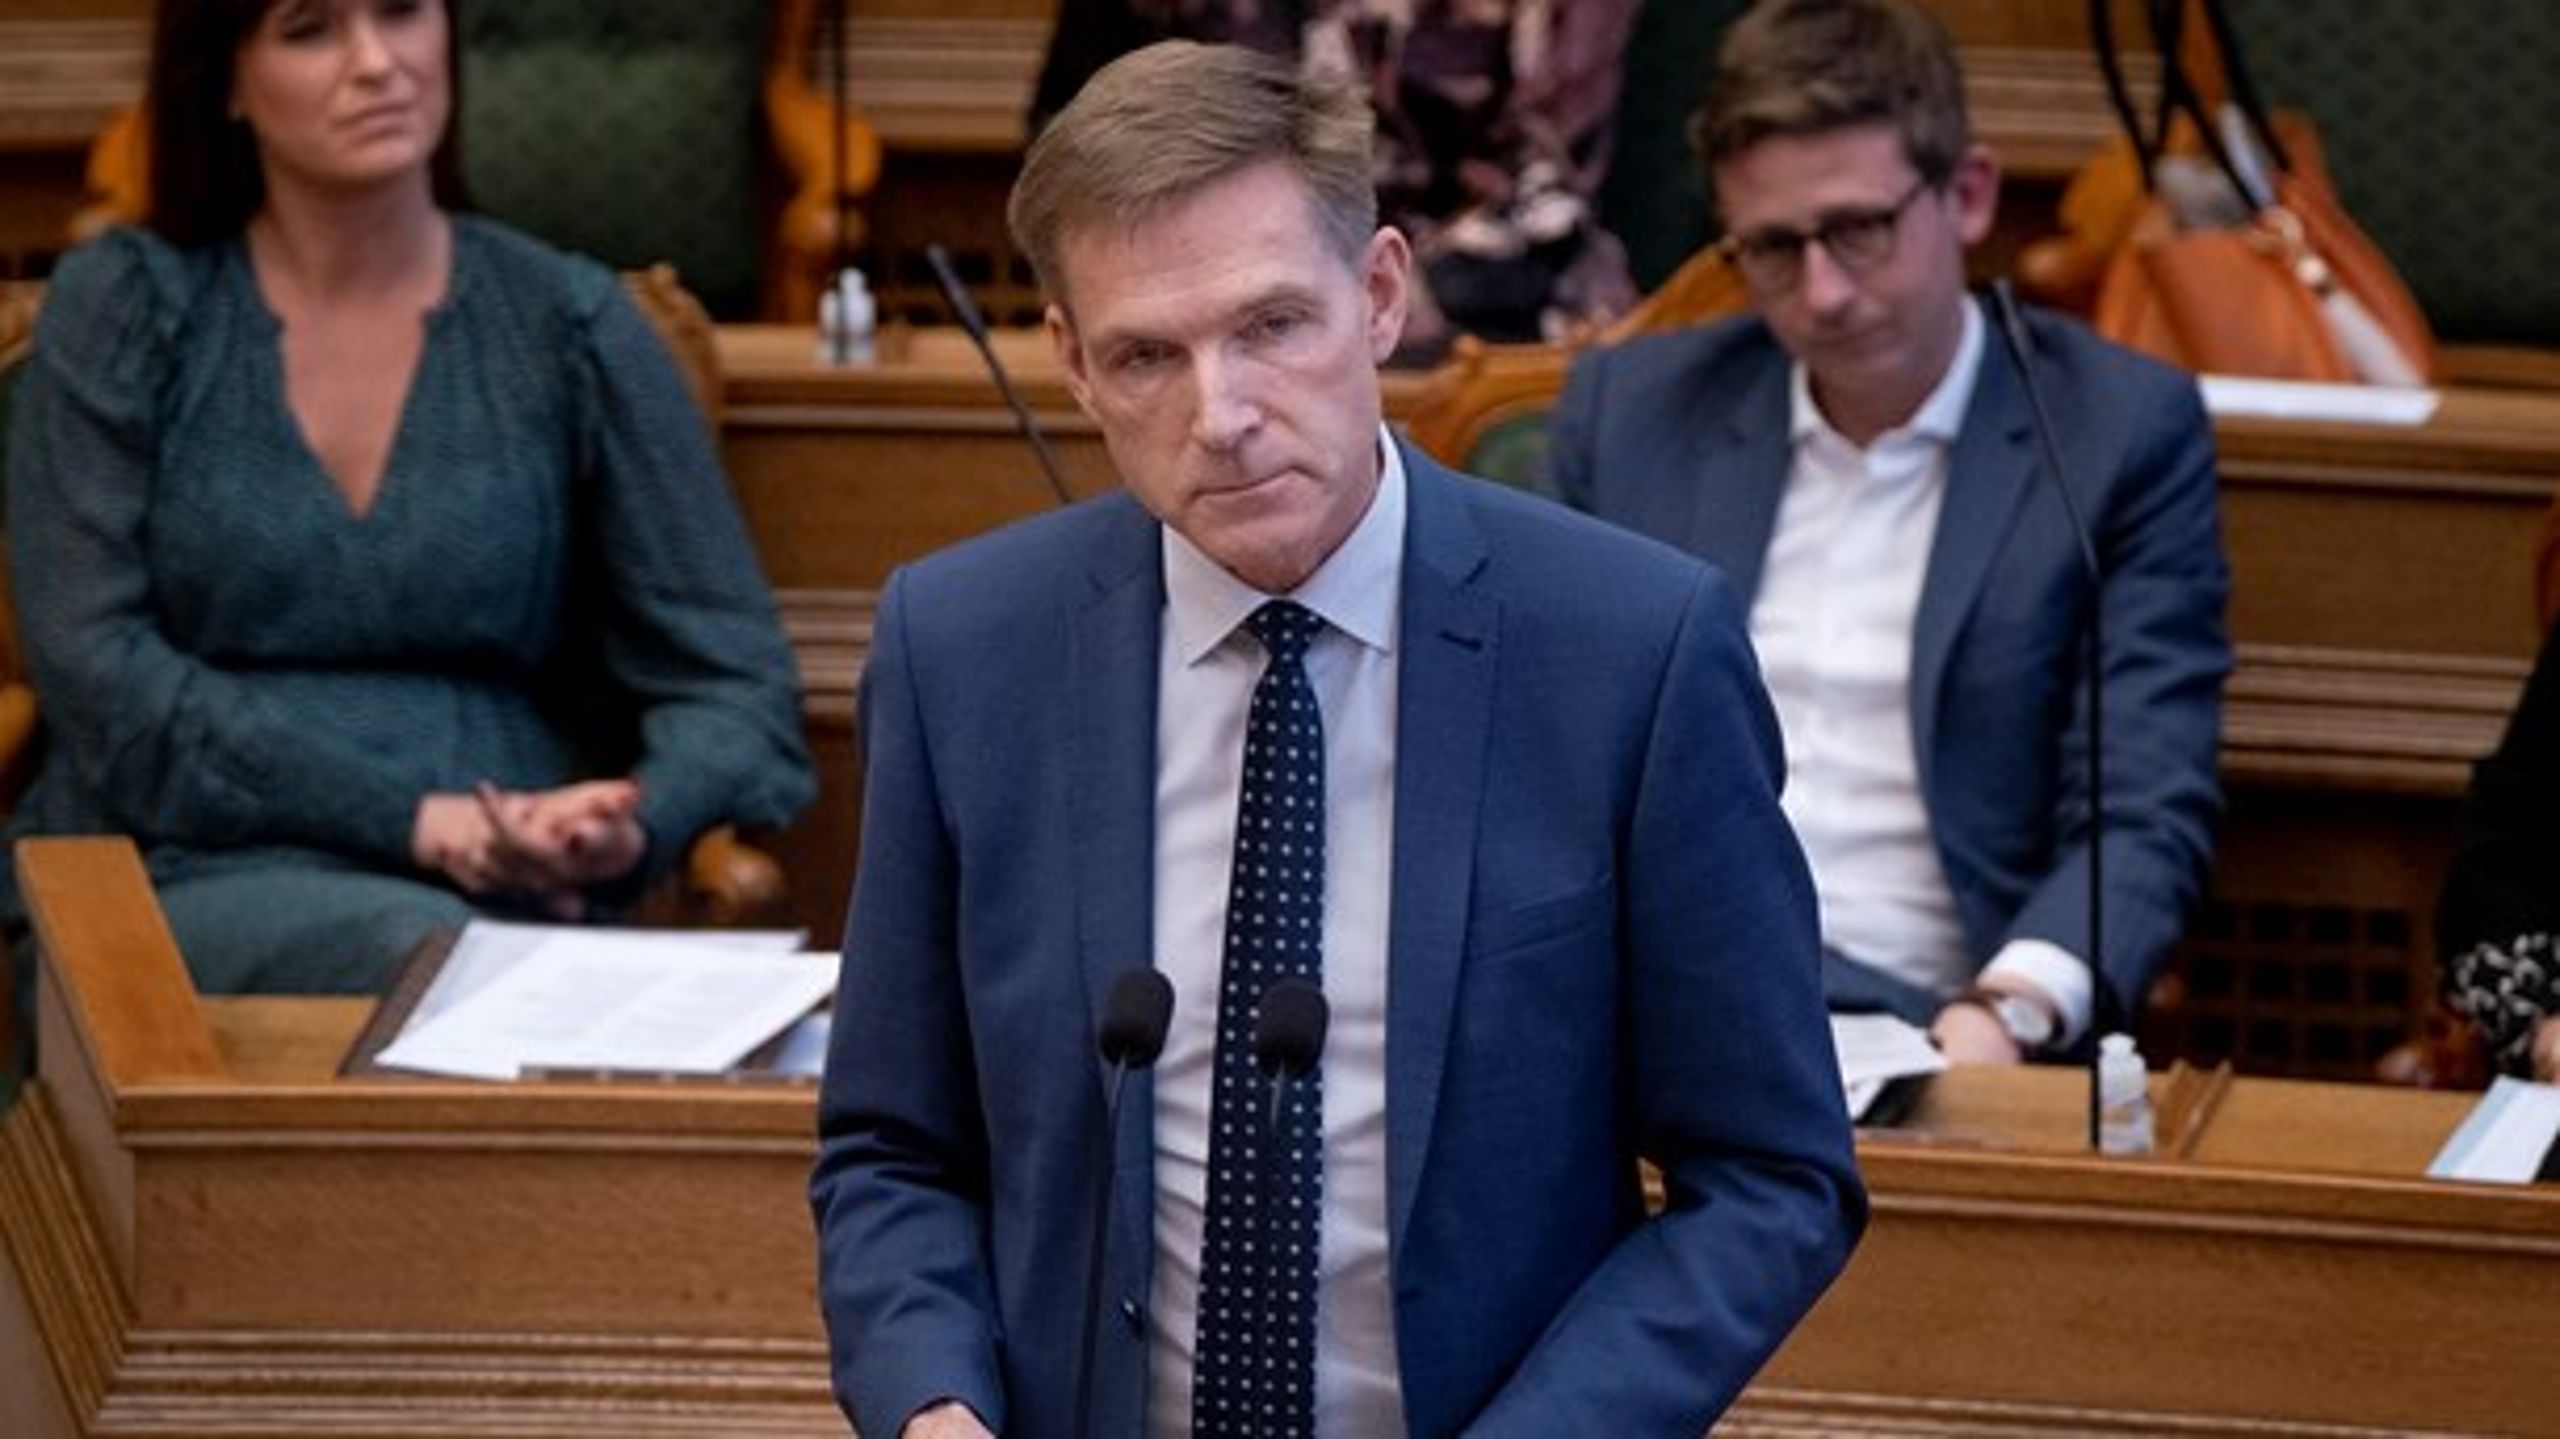 DF-formand Kristian Thulesen Dahl og Dansk Folkeparti har mistet 30 ud af 223 pladser i landets kommunalbestyrelser siden 2017.